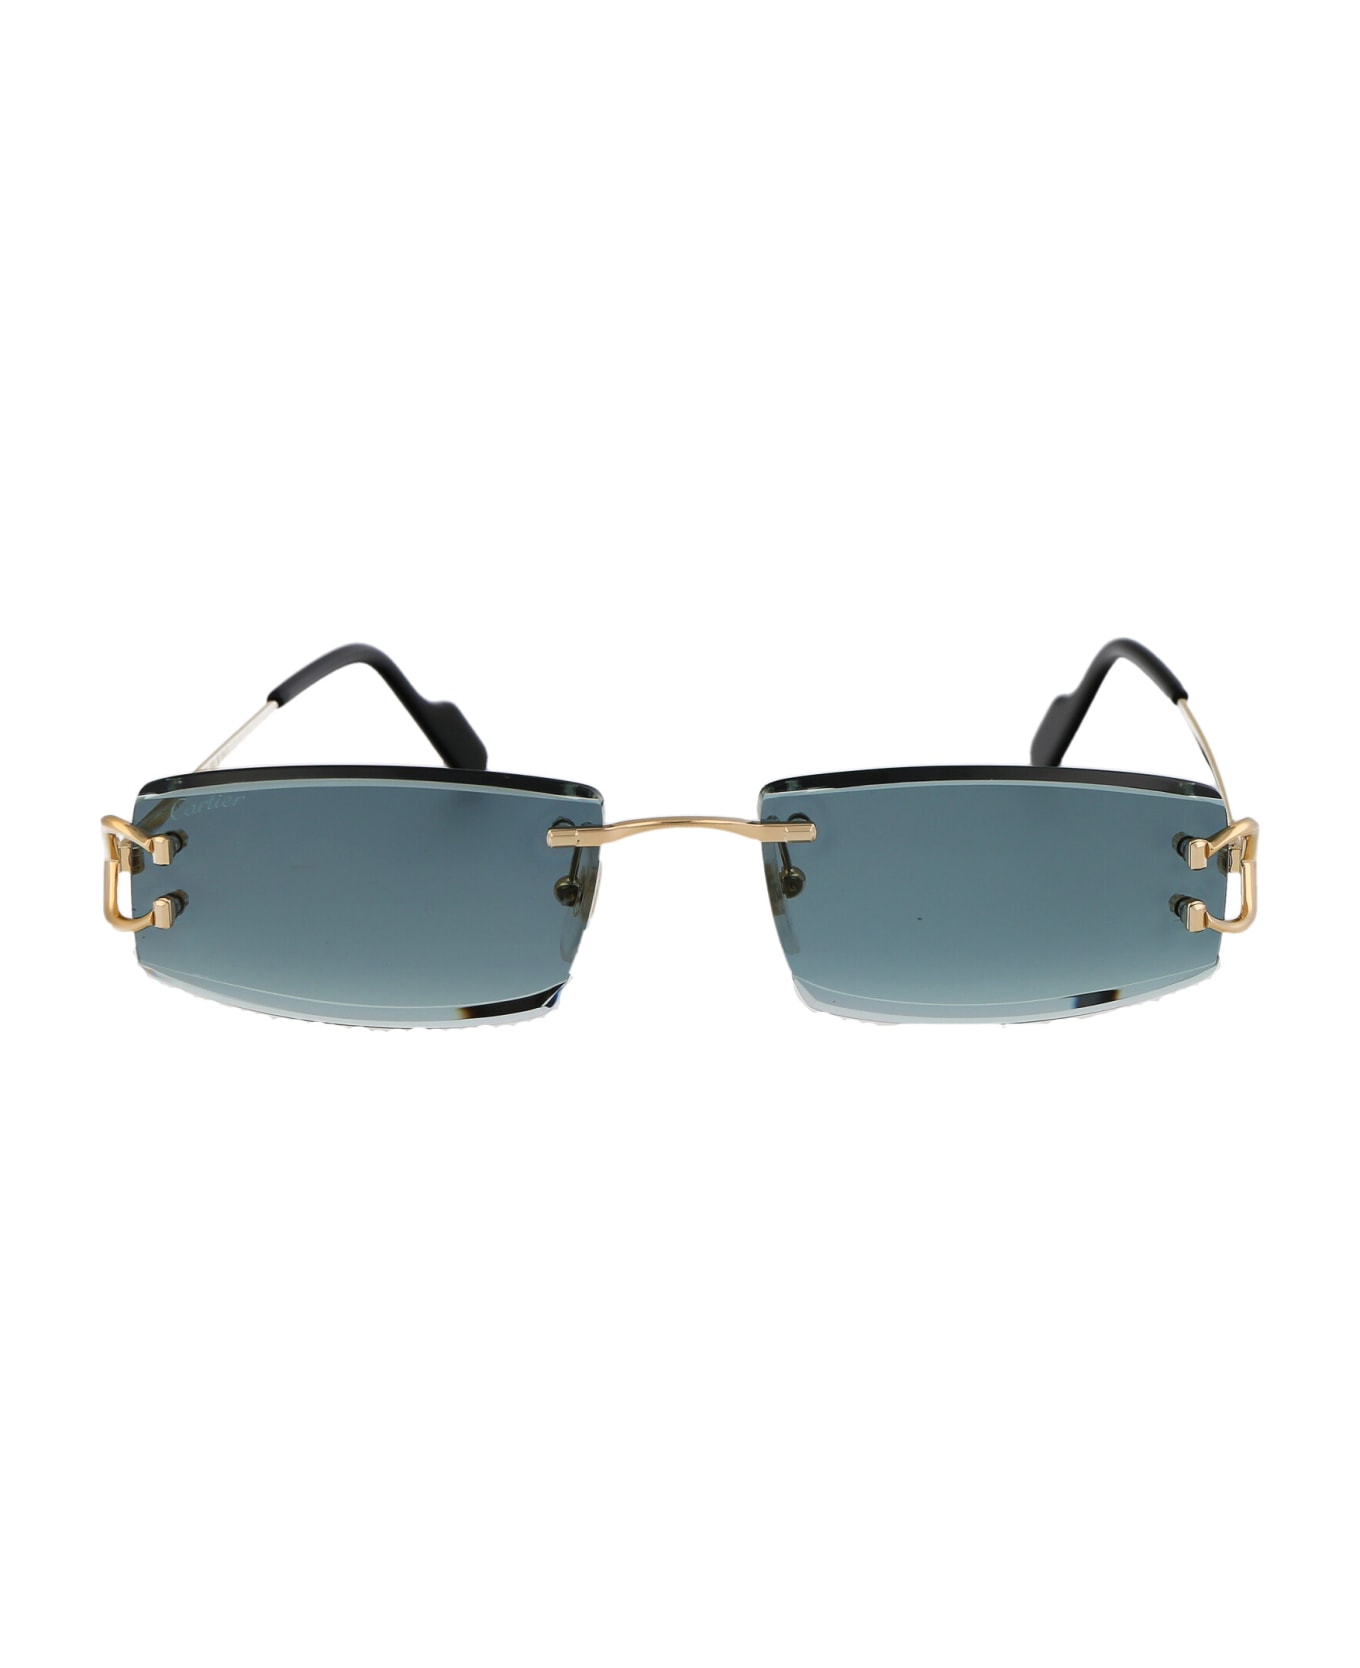 Cartier Eyewear Ct0465s Sunglasses - 003 GOLD GOLD GREEN